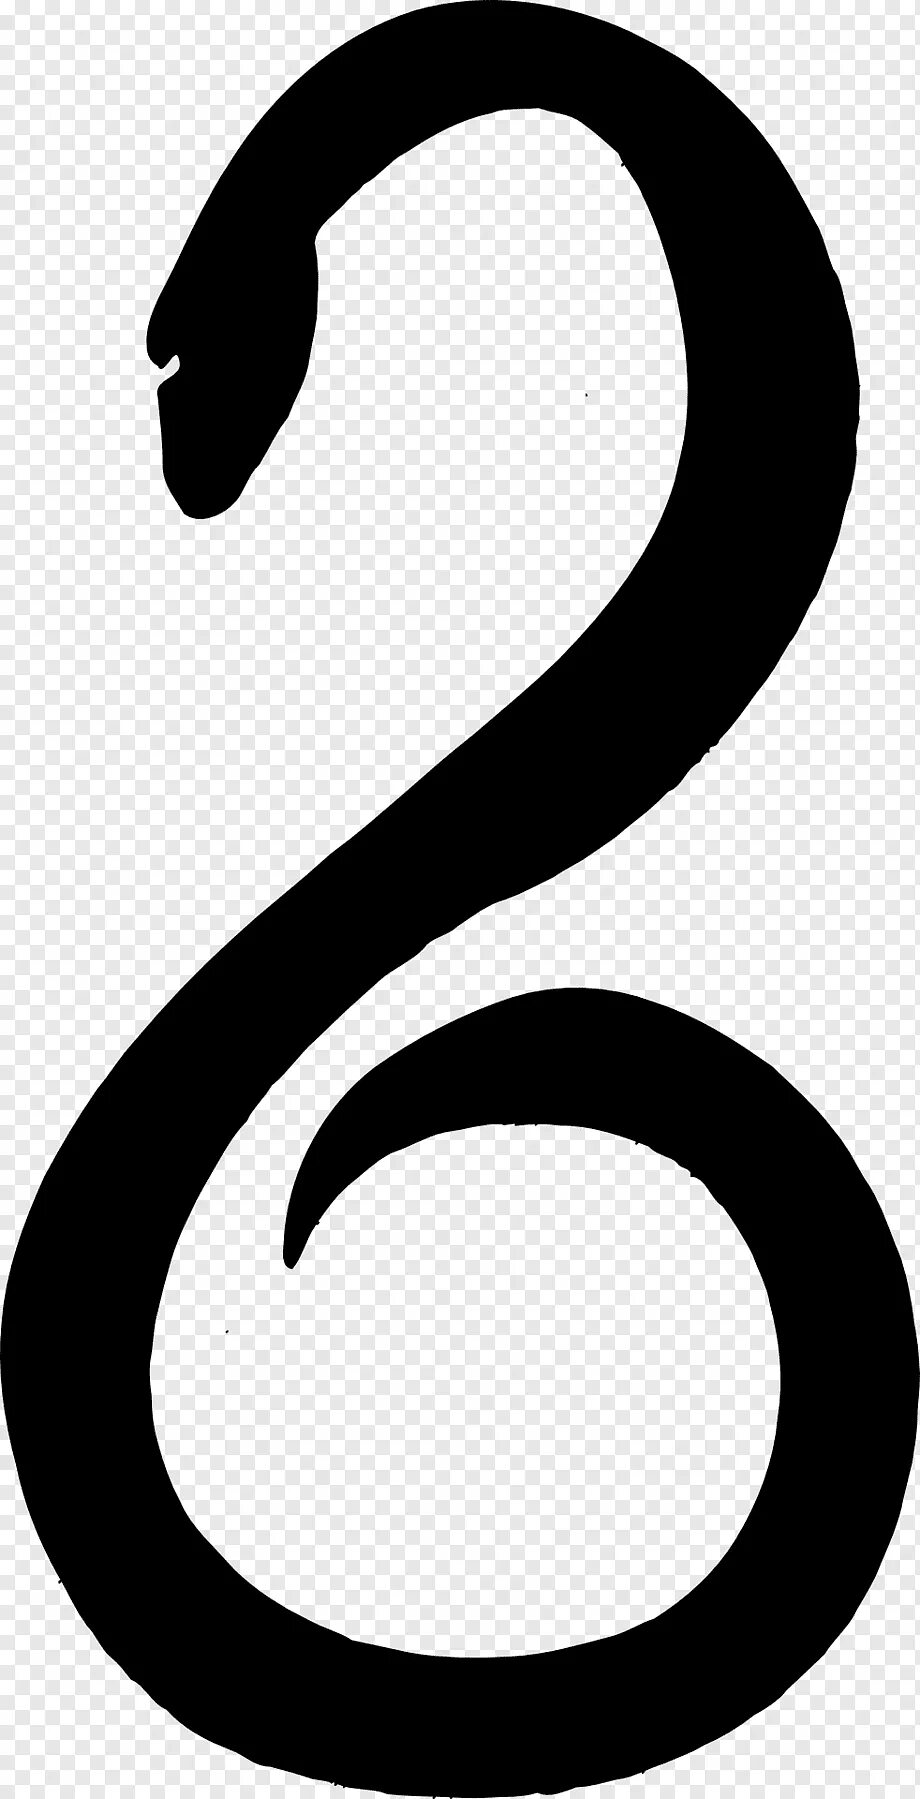 Знак змейки. Символ змеи. Змея буквой s. Змеиный символ. Змея в виде буквы s.